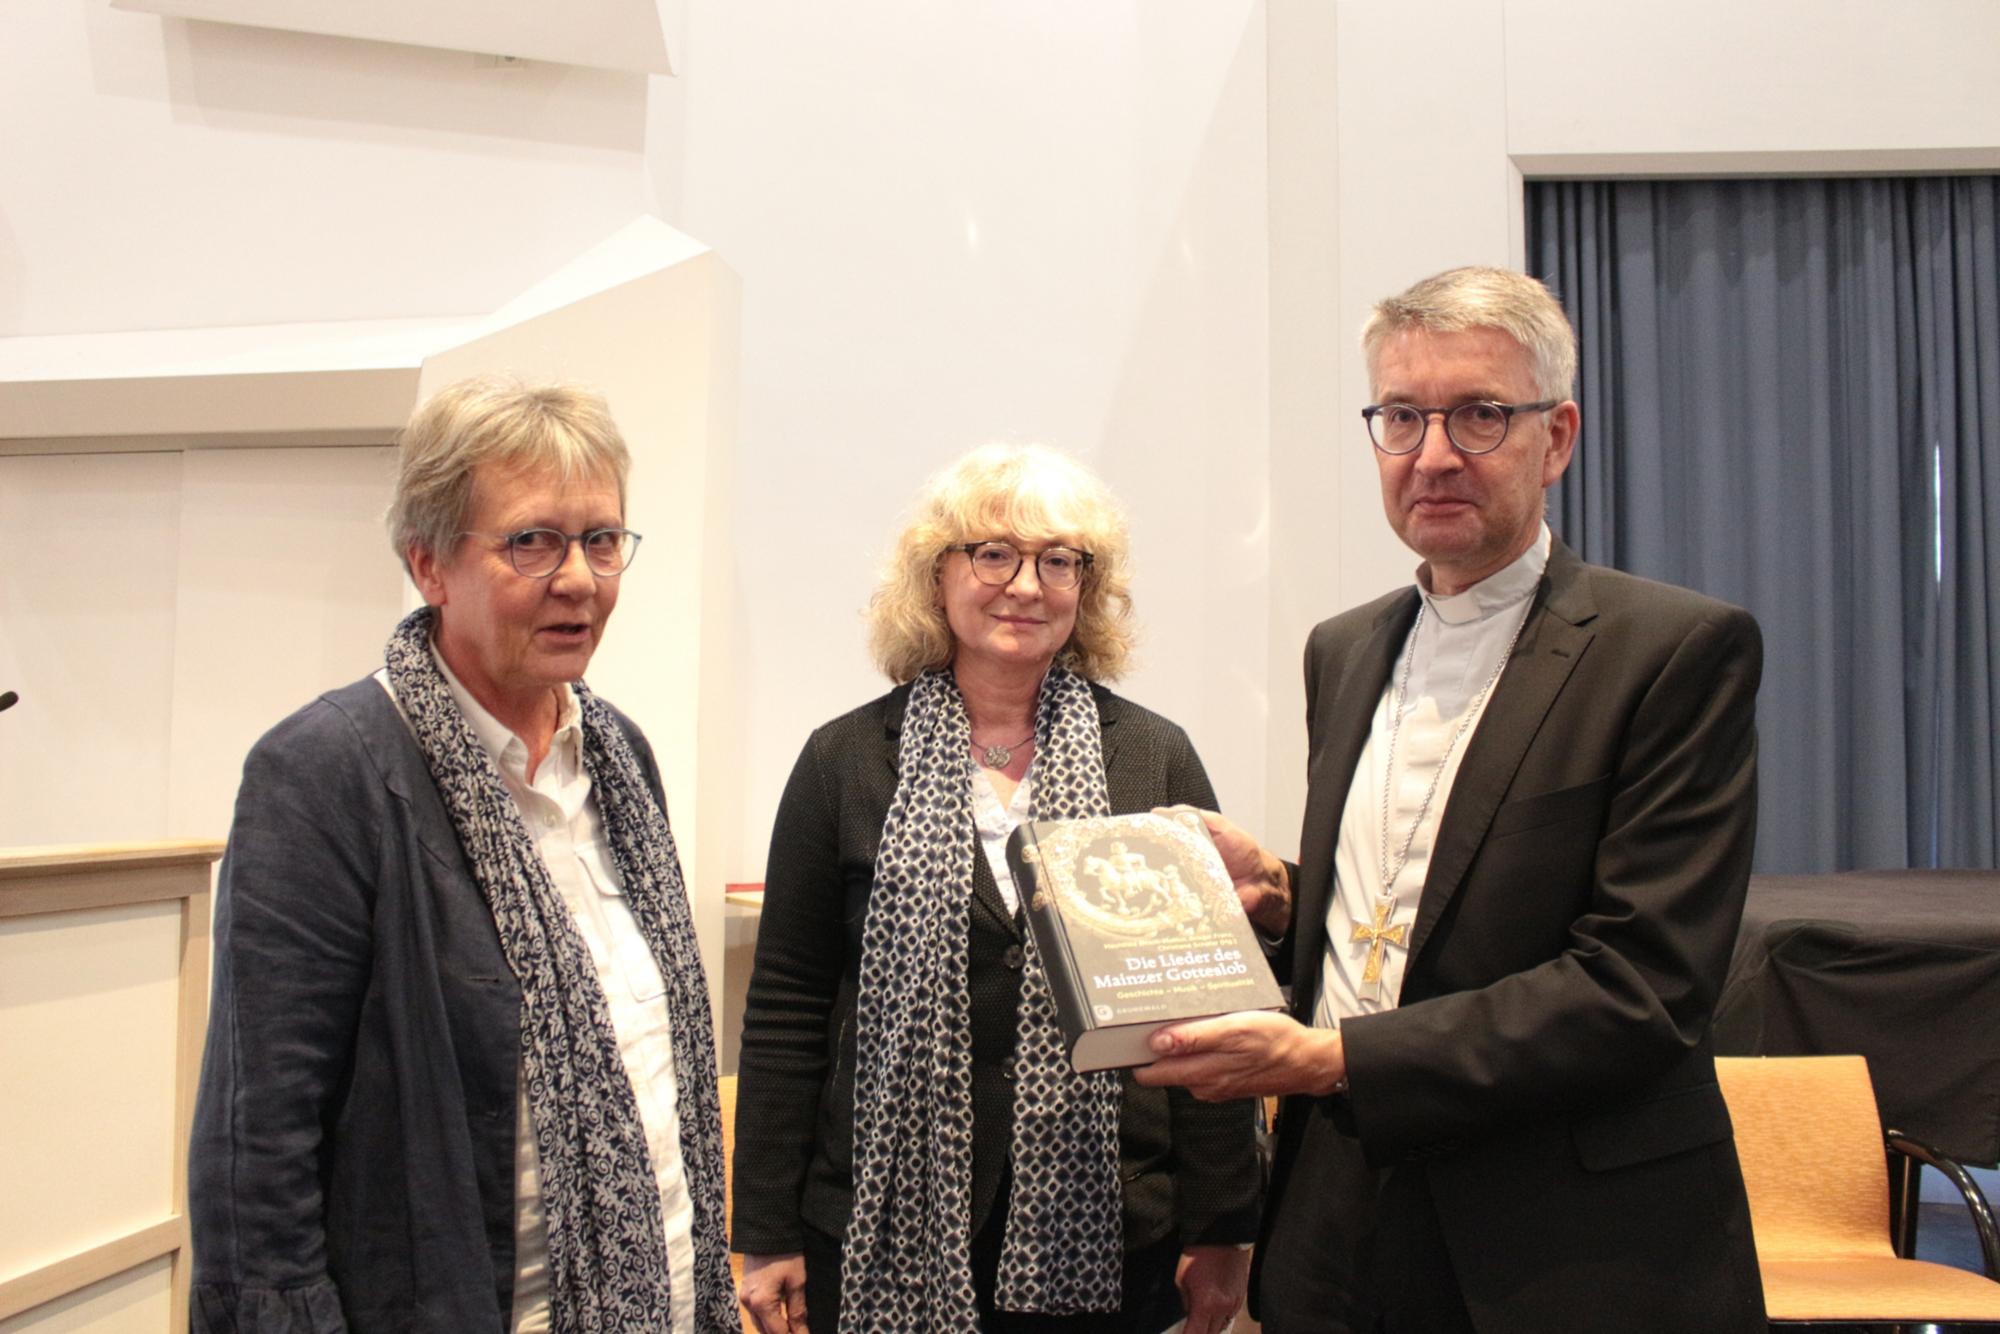 Mainz, 17. September 2022: Übergabe der Neuerscheinung an Bischof Kohlgraf durch die Herausgeberinnen Mechthild Bitsch-Molitor (links) und Christiane Schäfer (mitte).